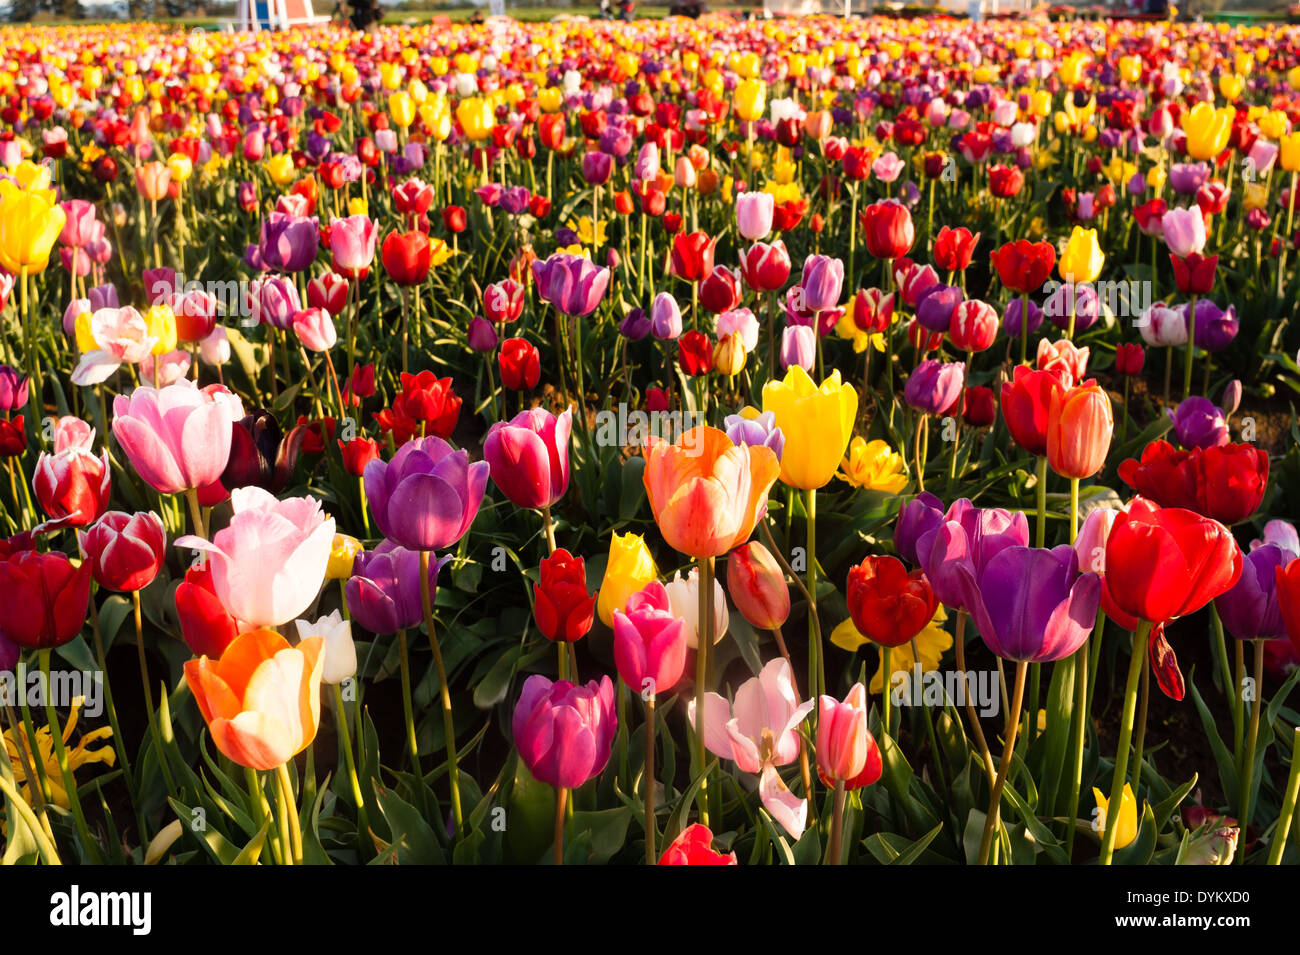 Horizontale Zusammensetzung eines großen Feldes voller Tulpen erntereif Stockfoto